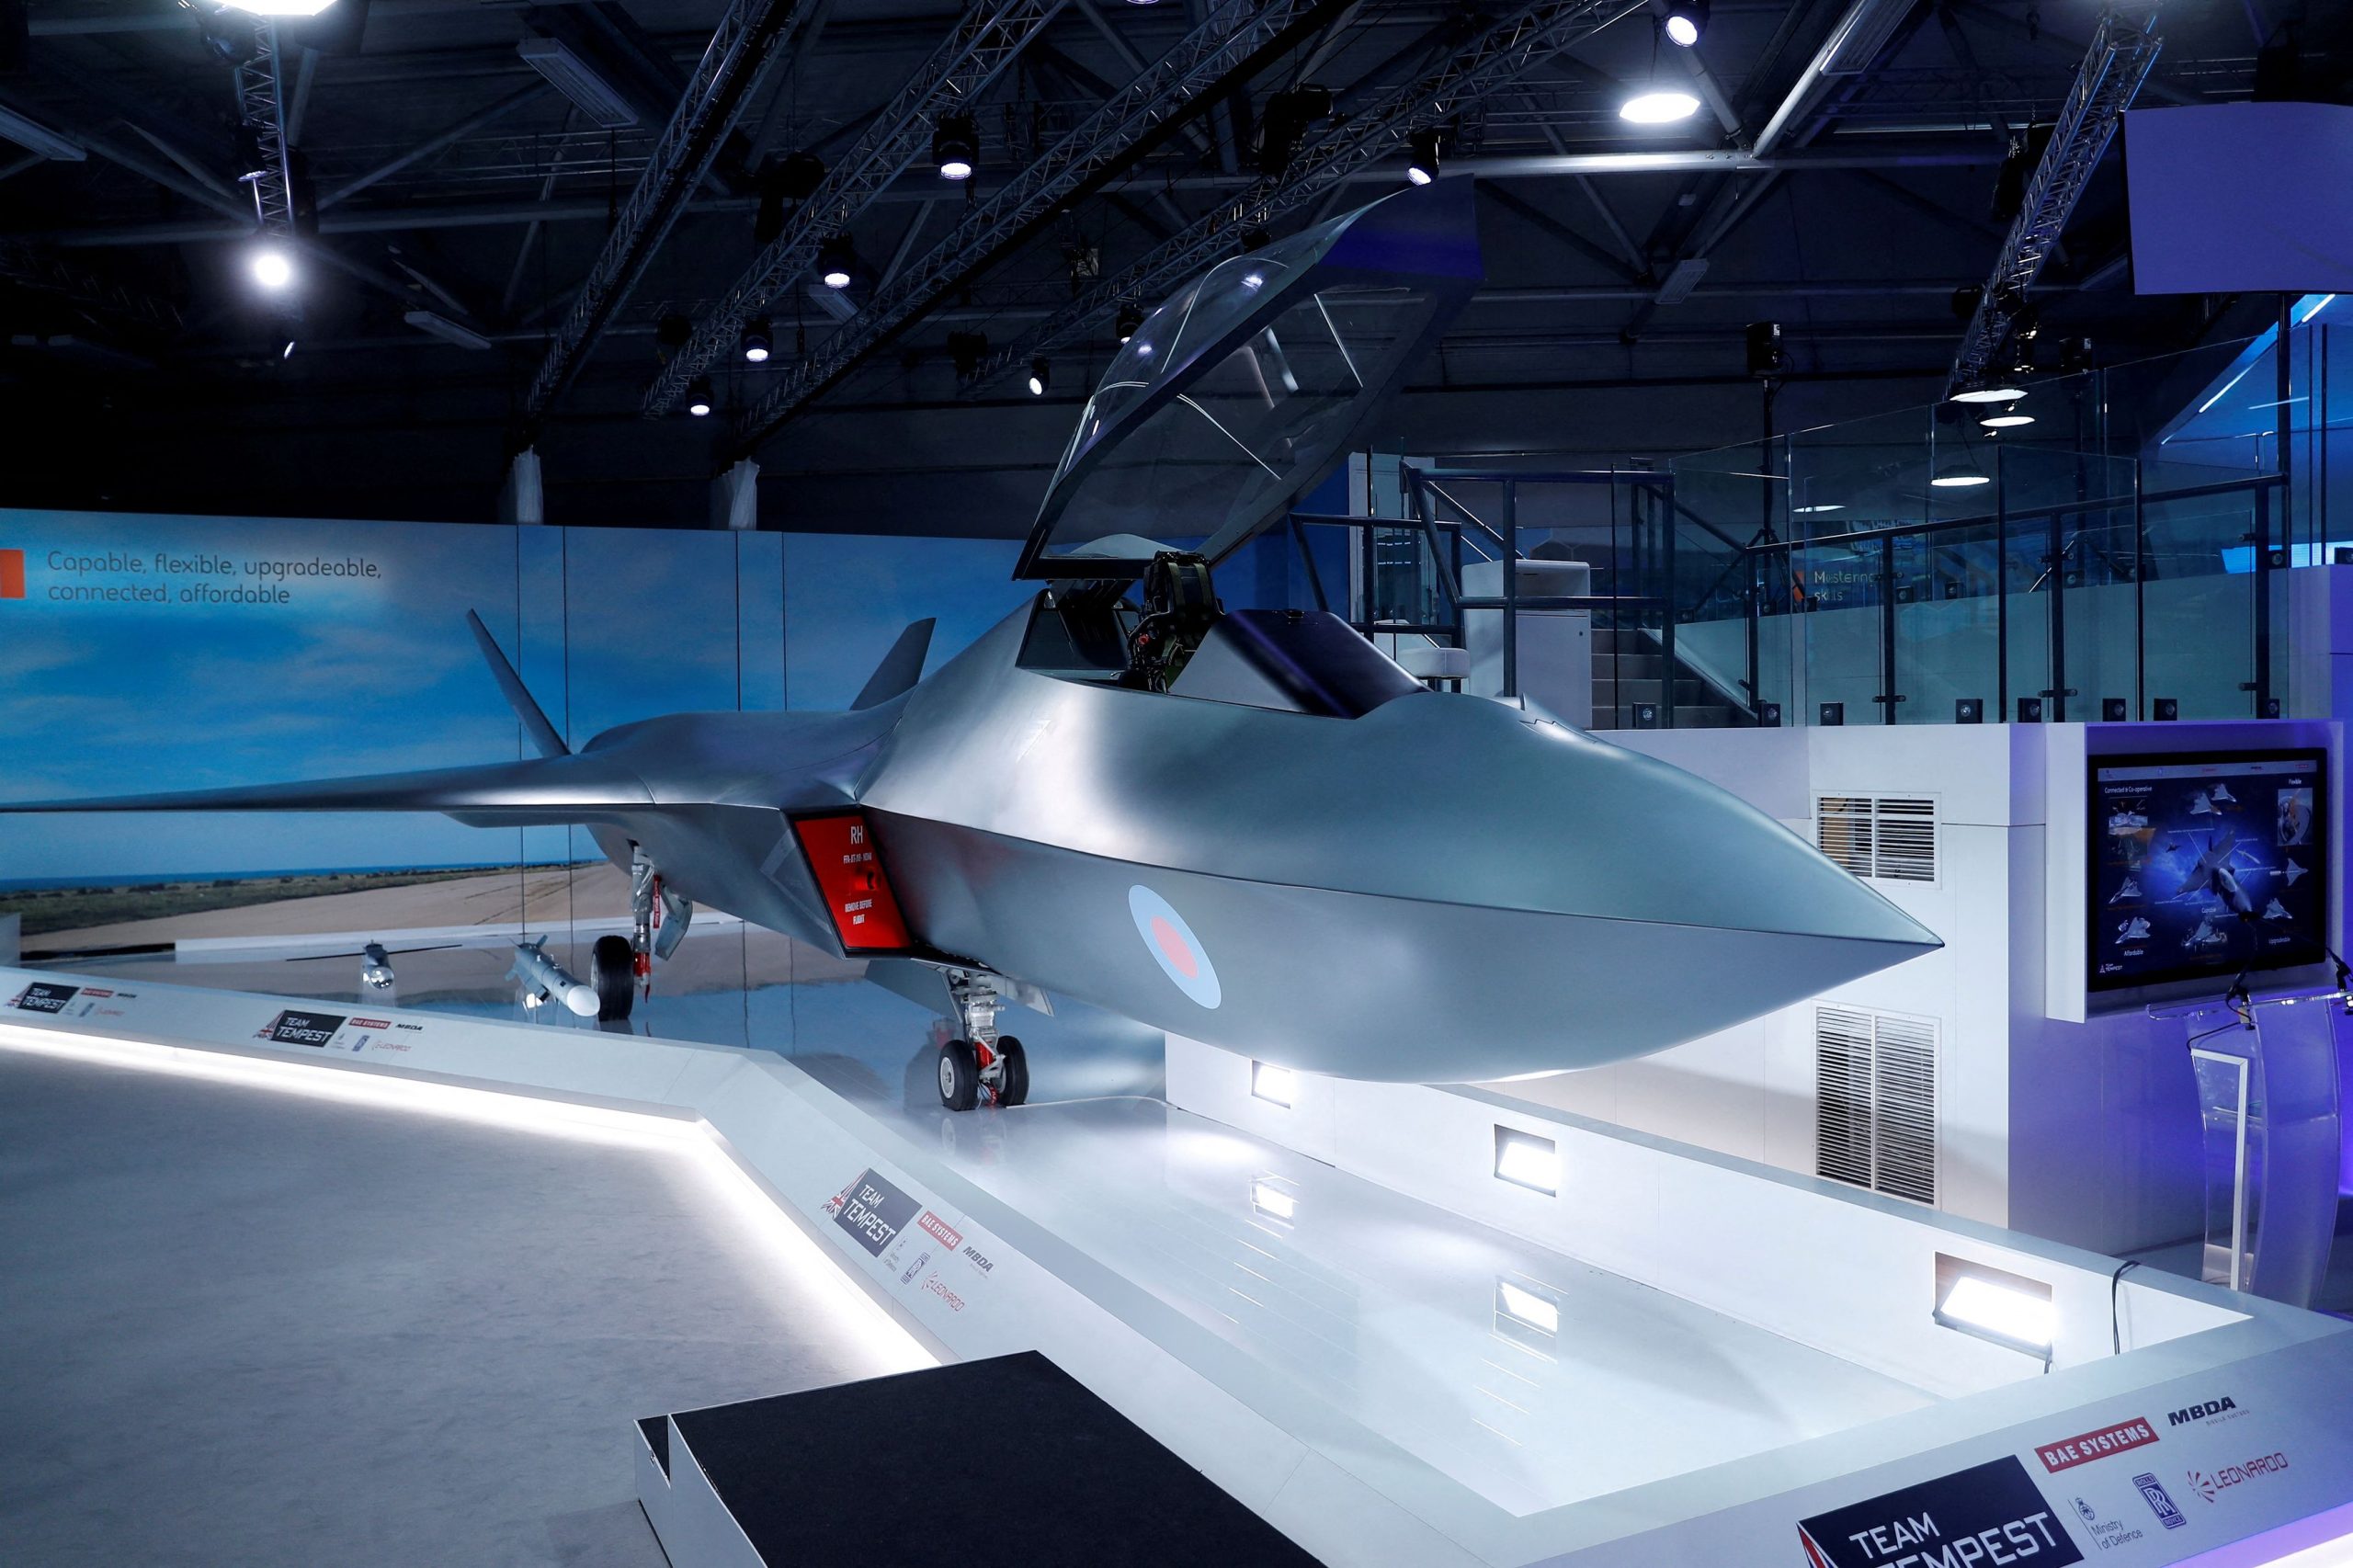 Βρετανία: Συνεργασία με Ιαπωνία για το νέο υπερηχητικό μαχητικό αεροσκάφος Tempest